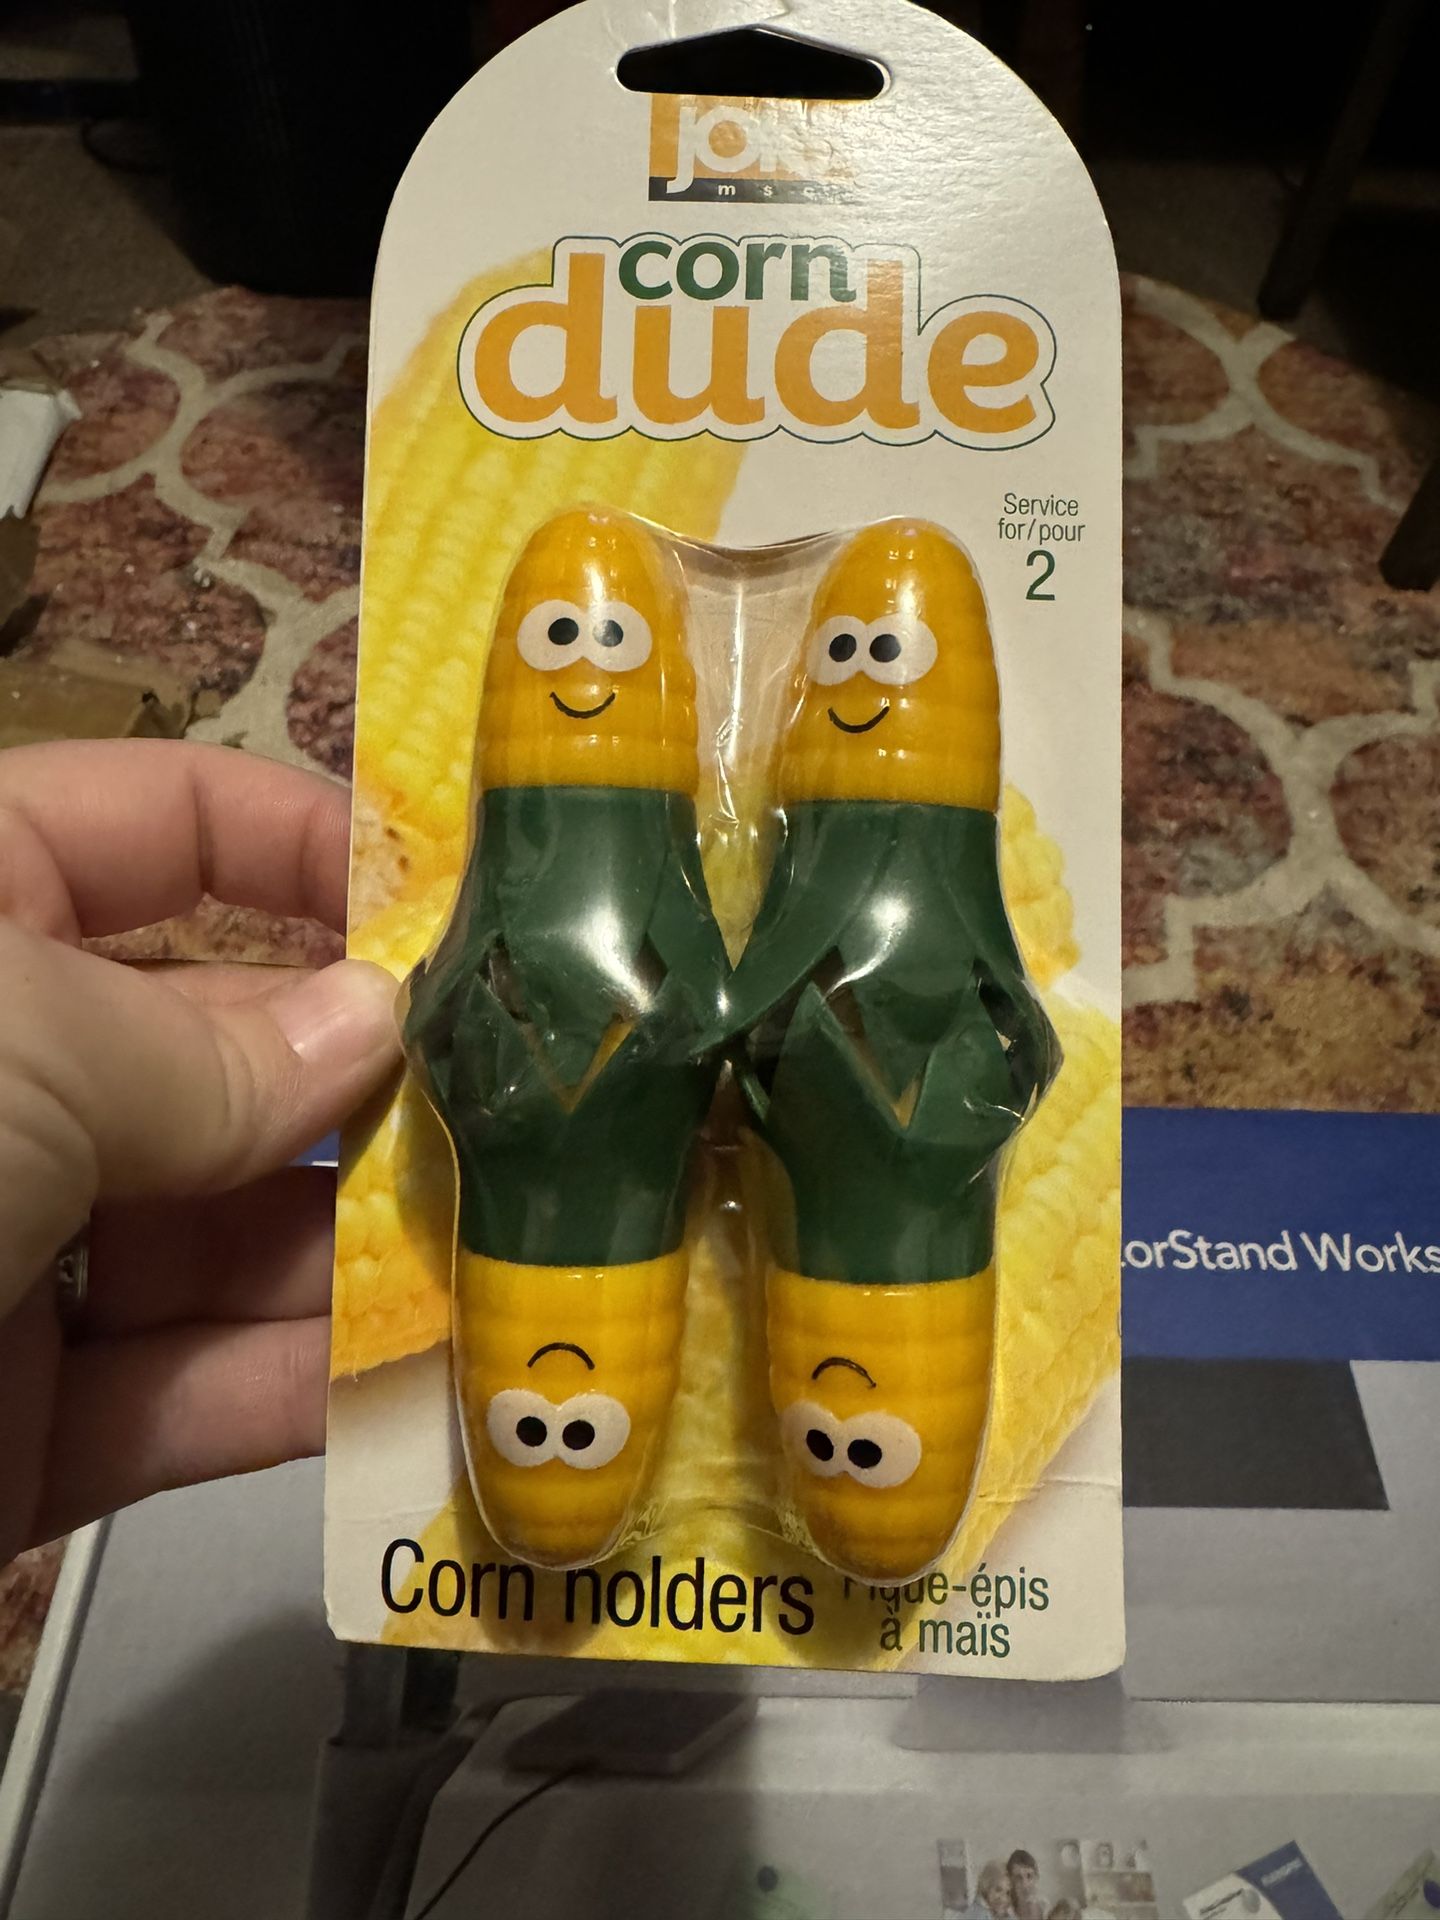 Corn dude